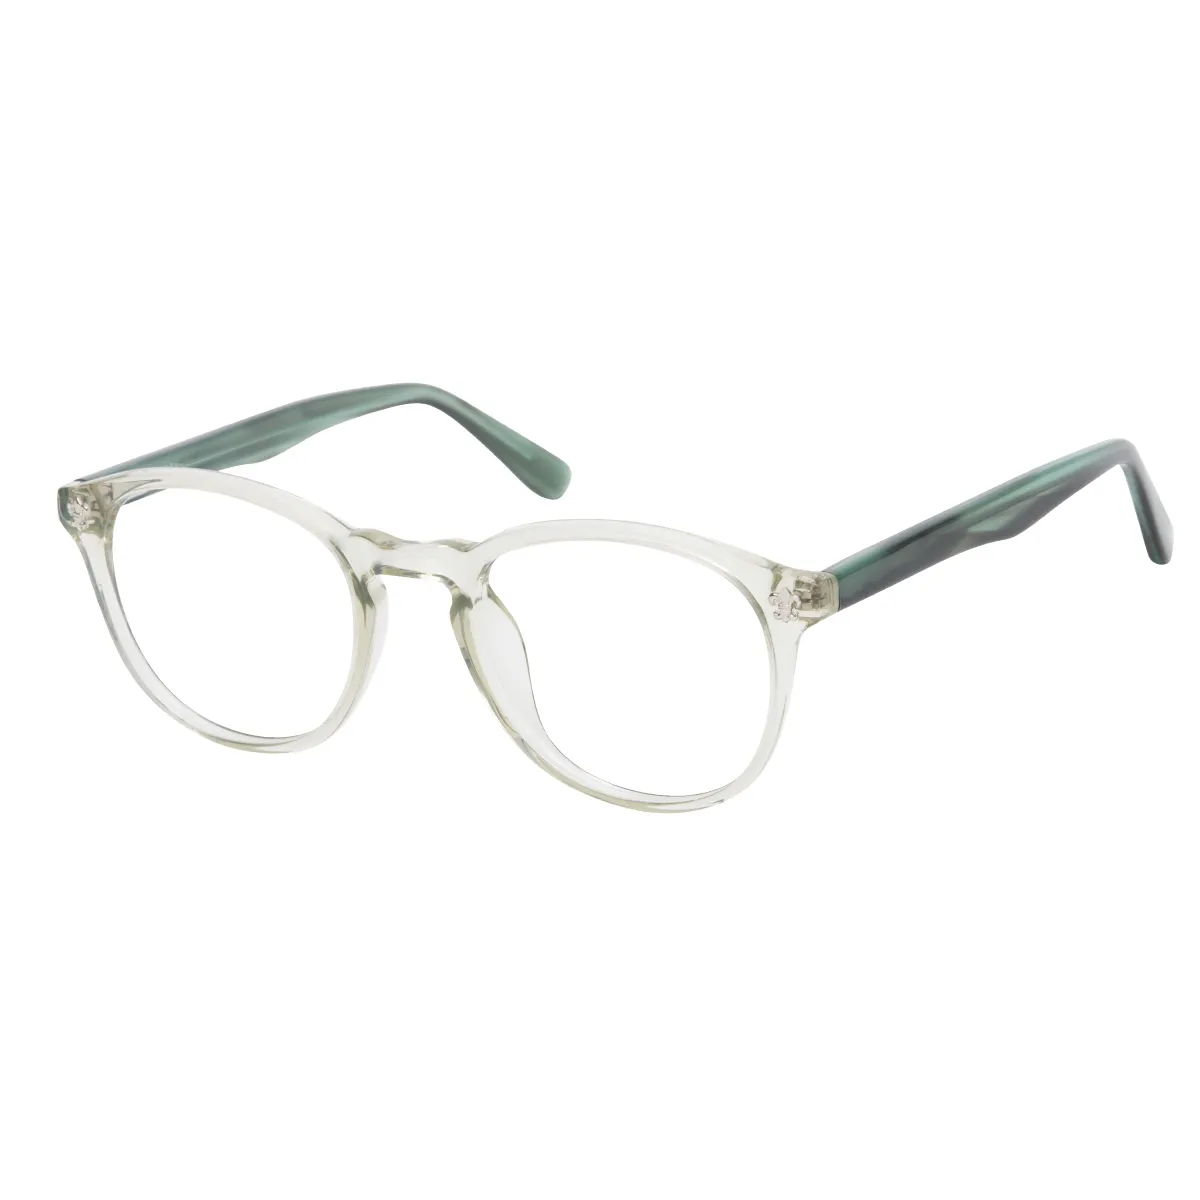 Nia - Oval Translucent-Green Glasses for Men & Women